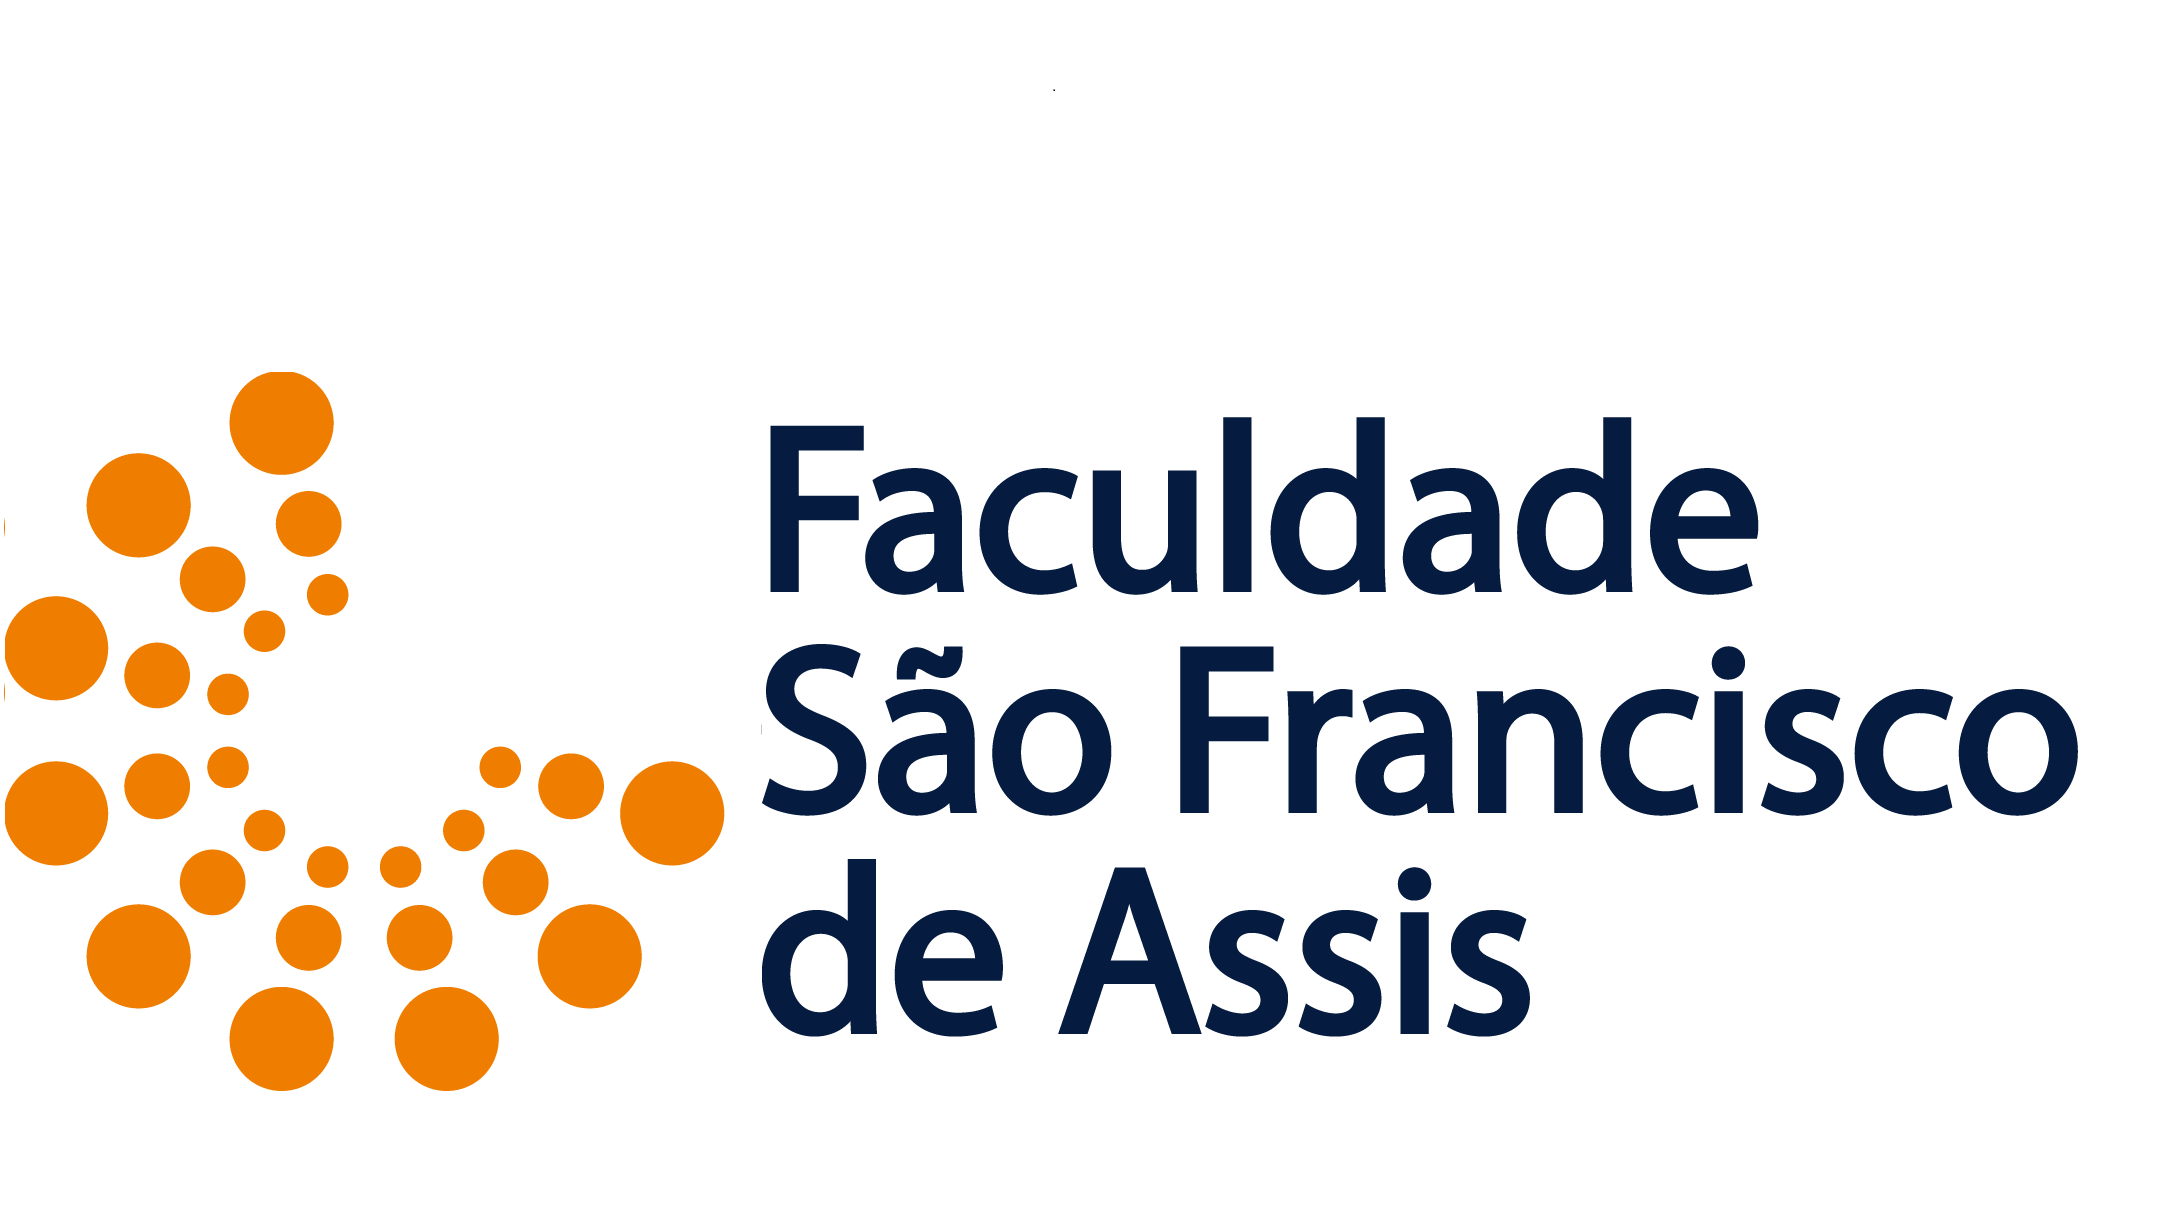 UNIFIN - Faculdade São Francisco de Assis